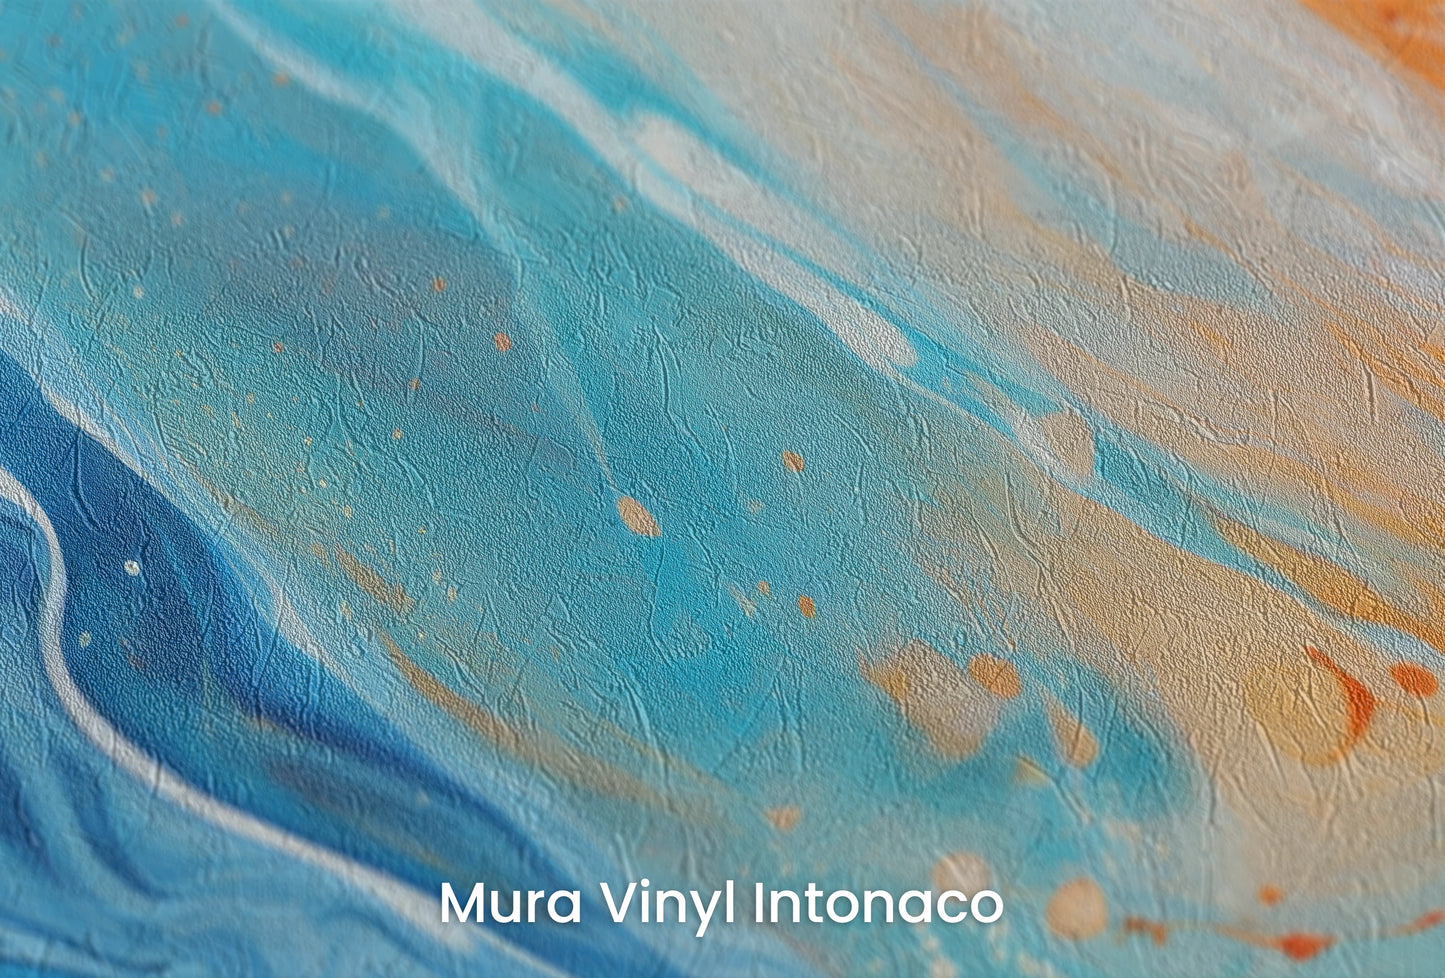 Zbliżenie na artystyczną fototapetę o nazwie Lunar Landscape na podłożu Mura Vinyl Intonaco - struktura tartego tynku.